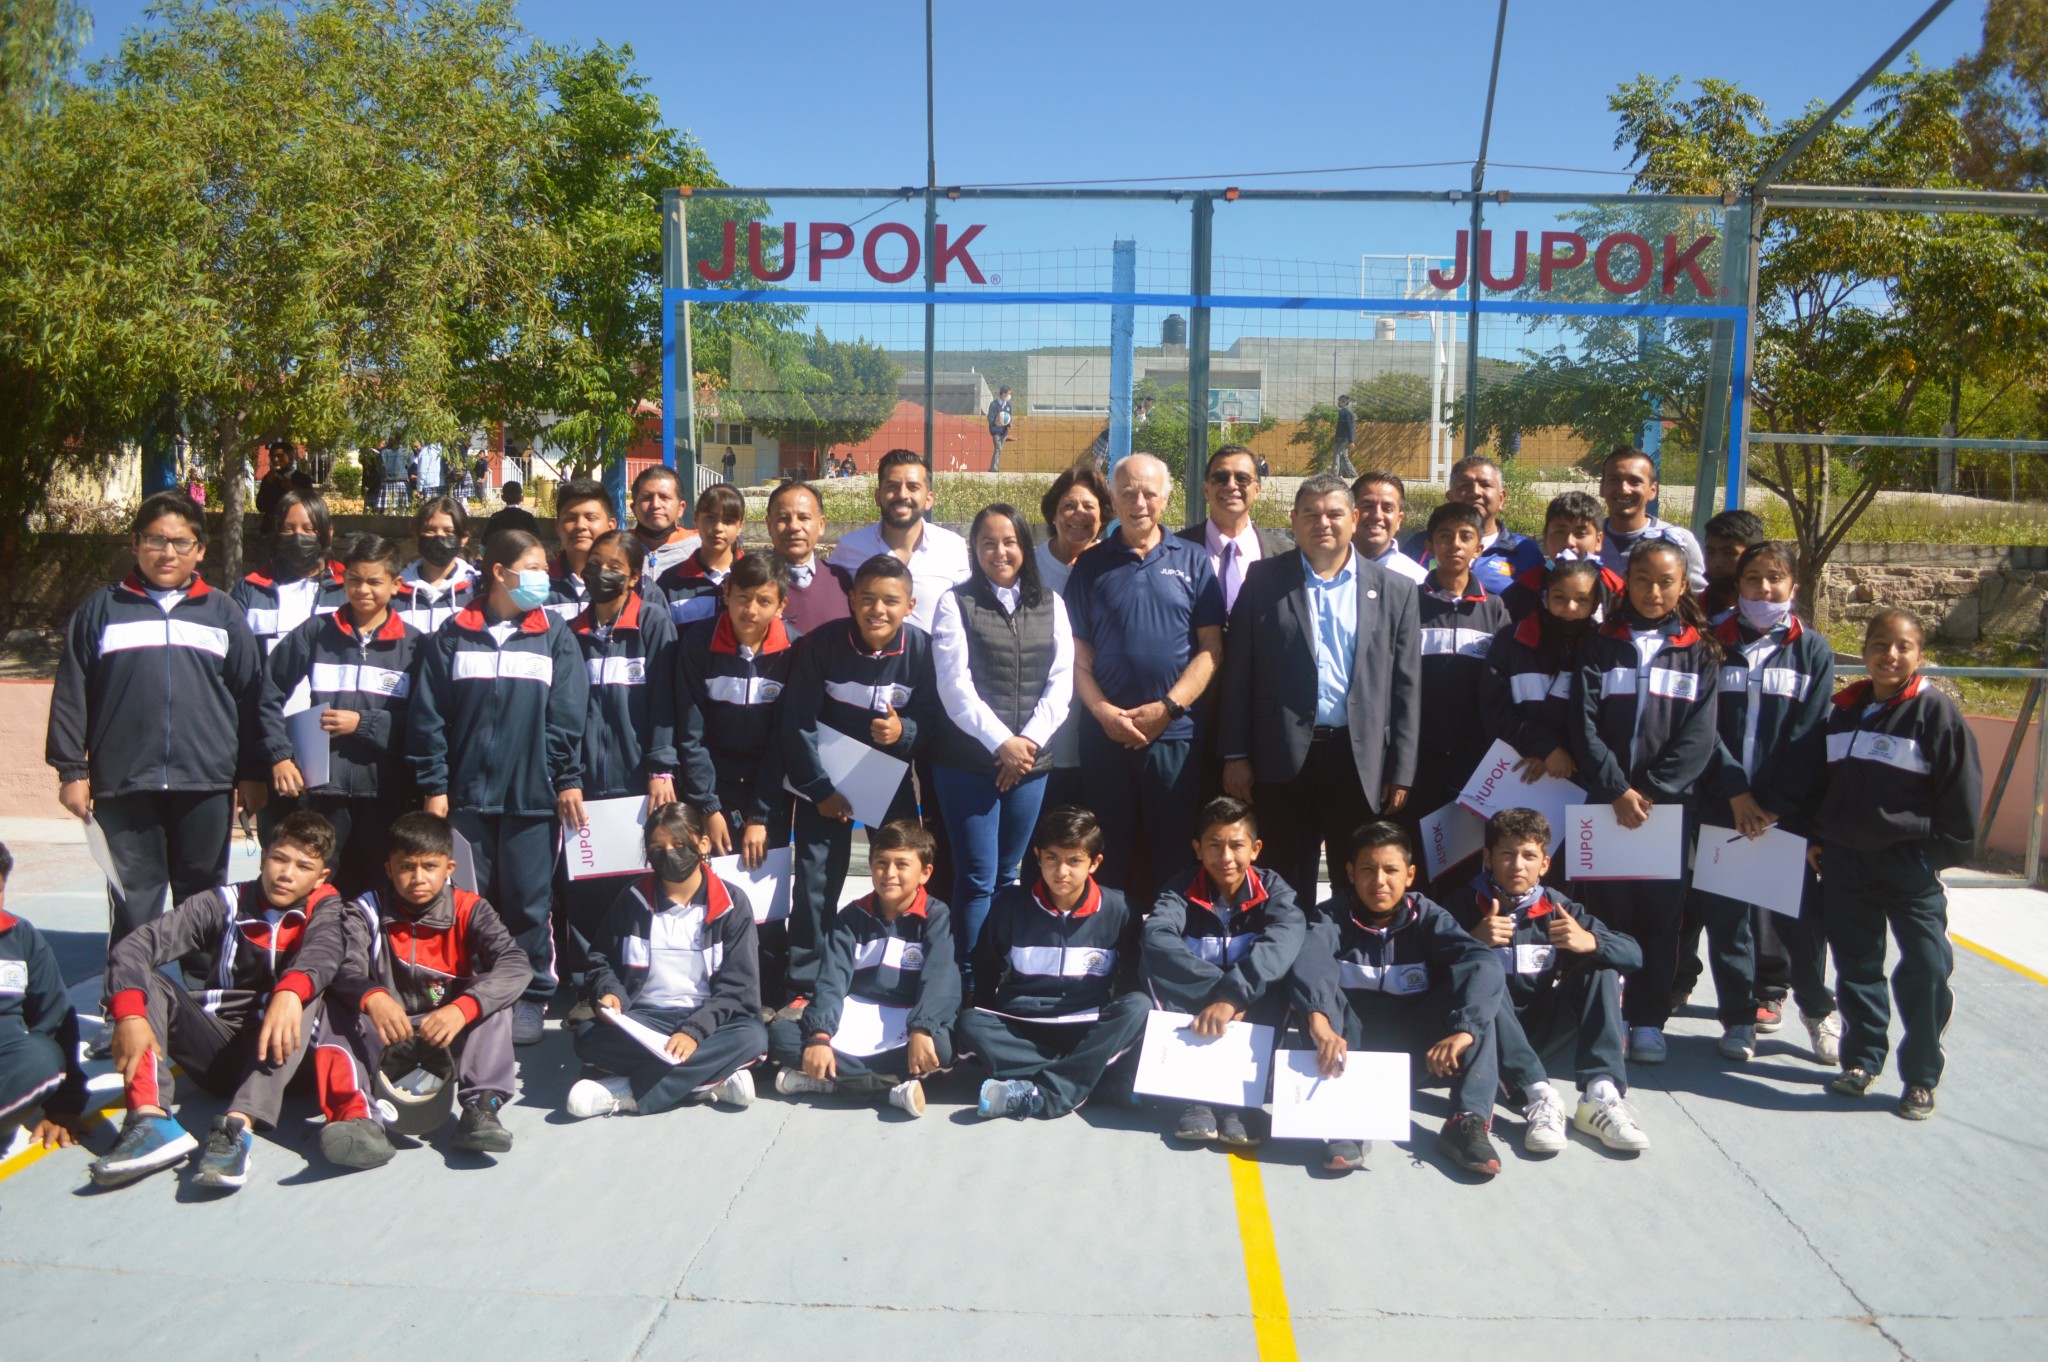 Promueven en Guanajuato la práctica del juego de pelota denominado Jupok